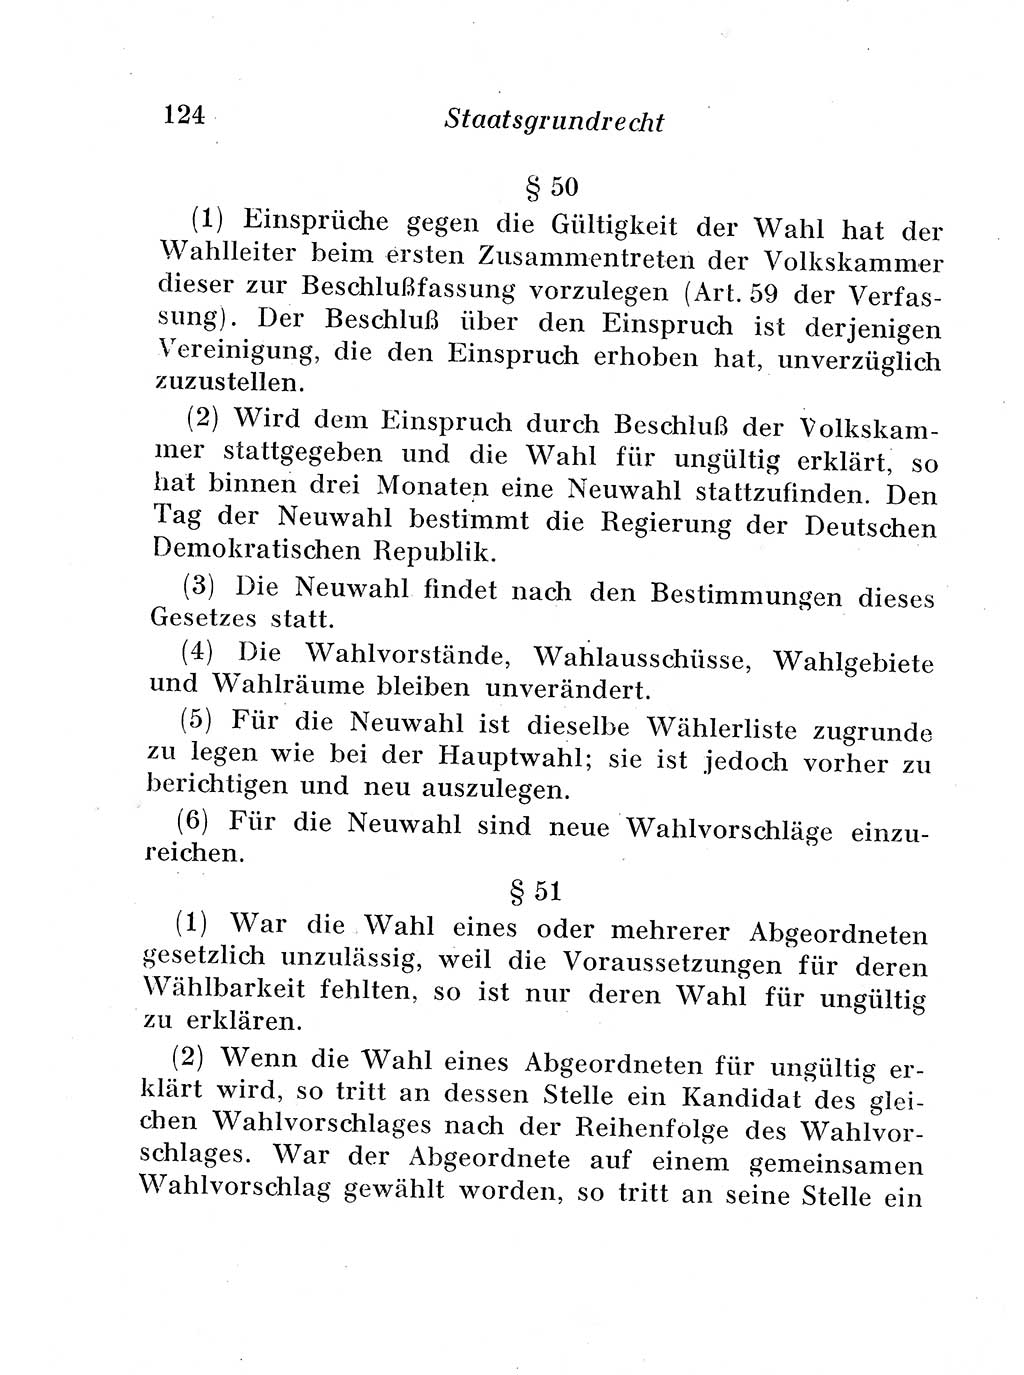 Staats- und verwaltungsrechtliche Gesetze der Deutschen Demokratischen Republik (DDR) 1958, Seite 124 (StVerwR Ges. DDR 1958, S. 124)